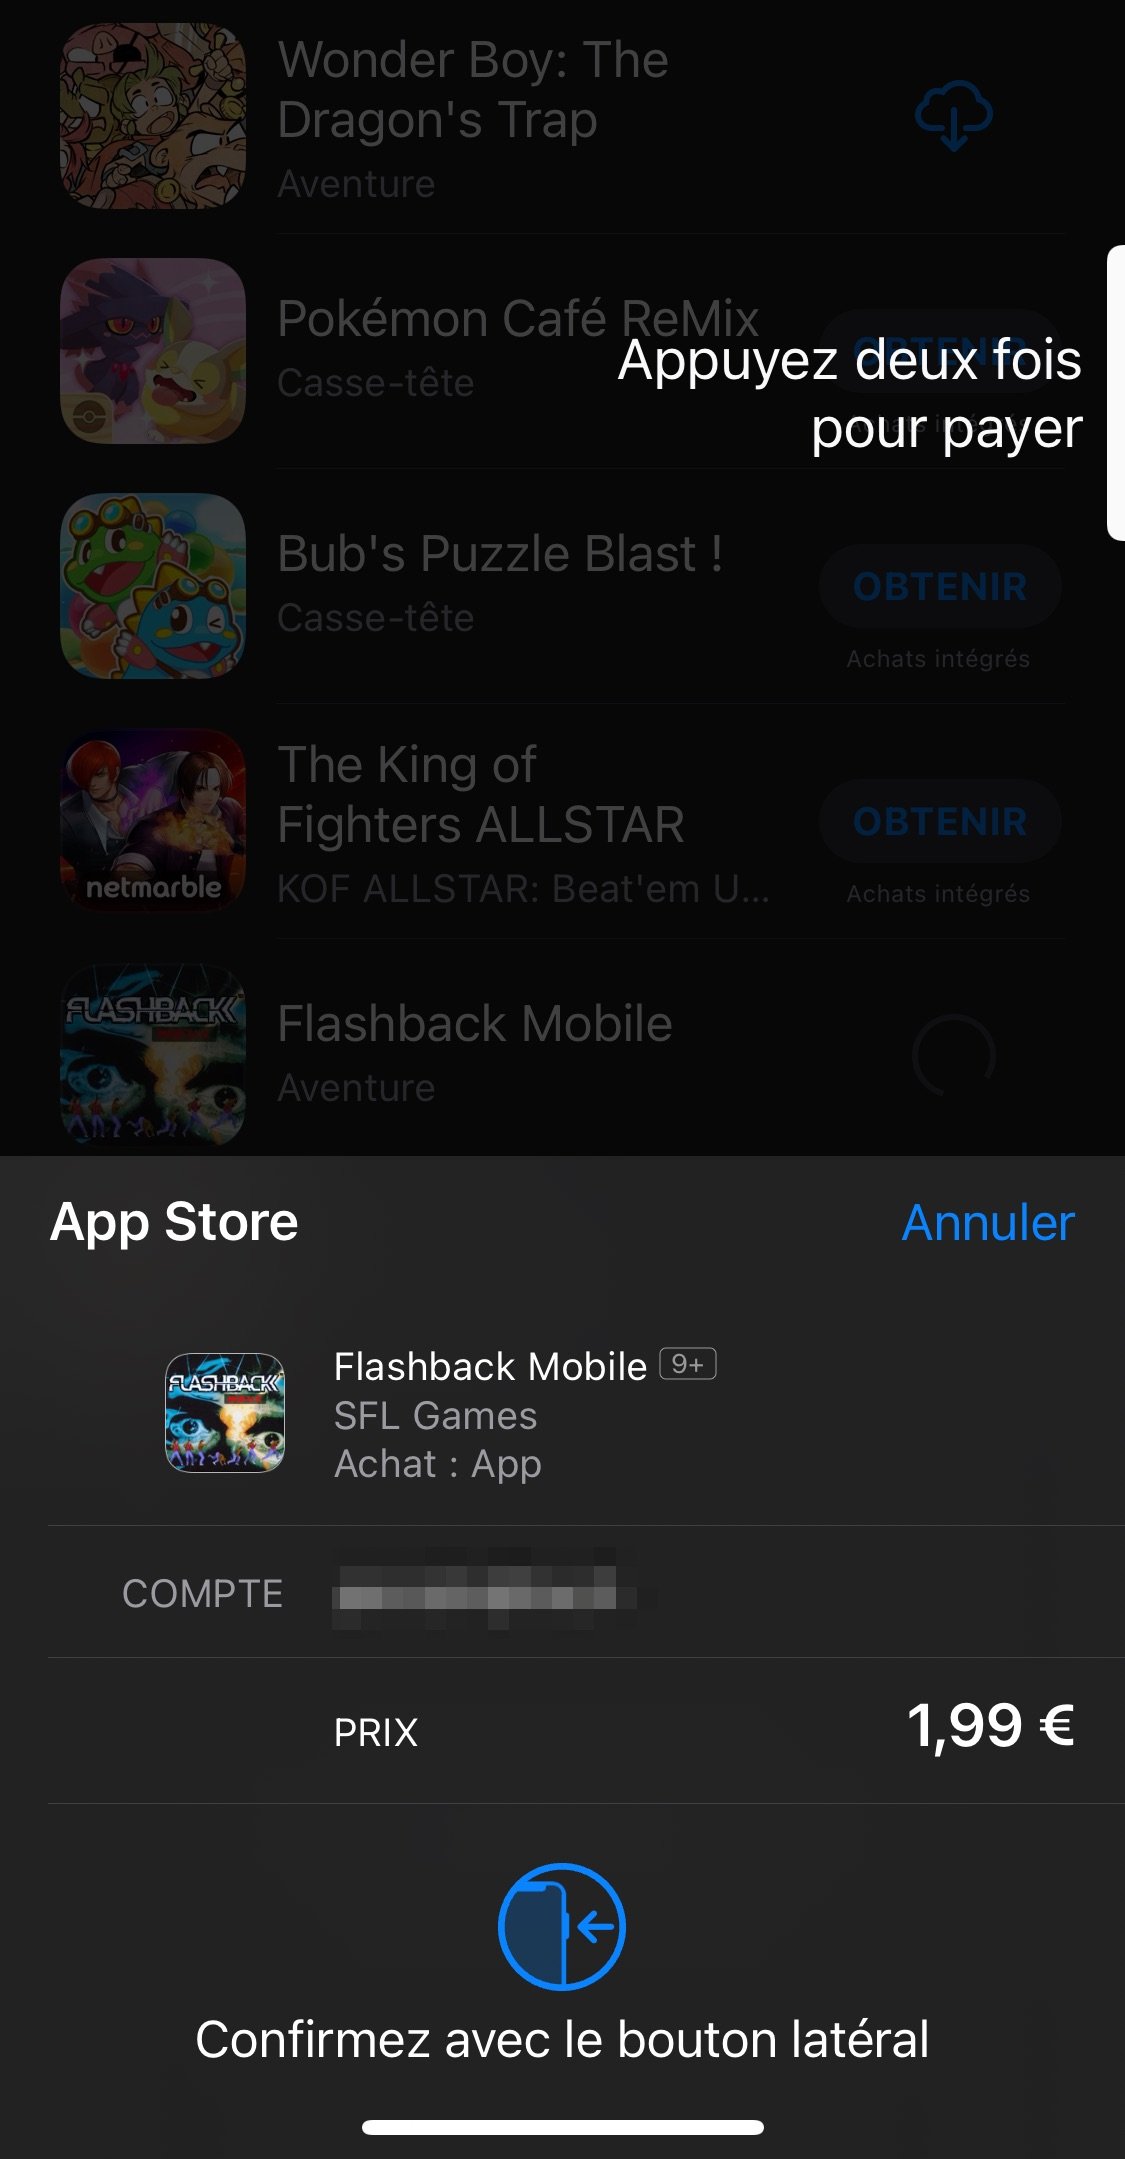 écran iOS de validation d'un achat sur l'App Store